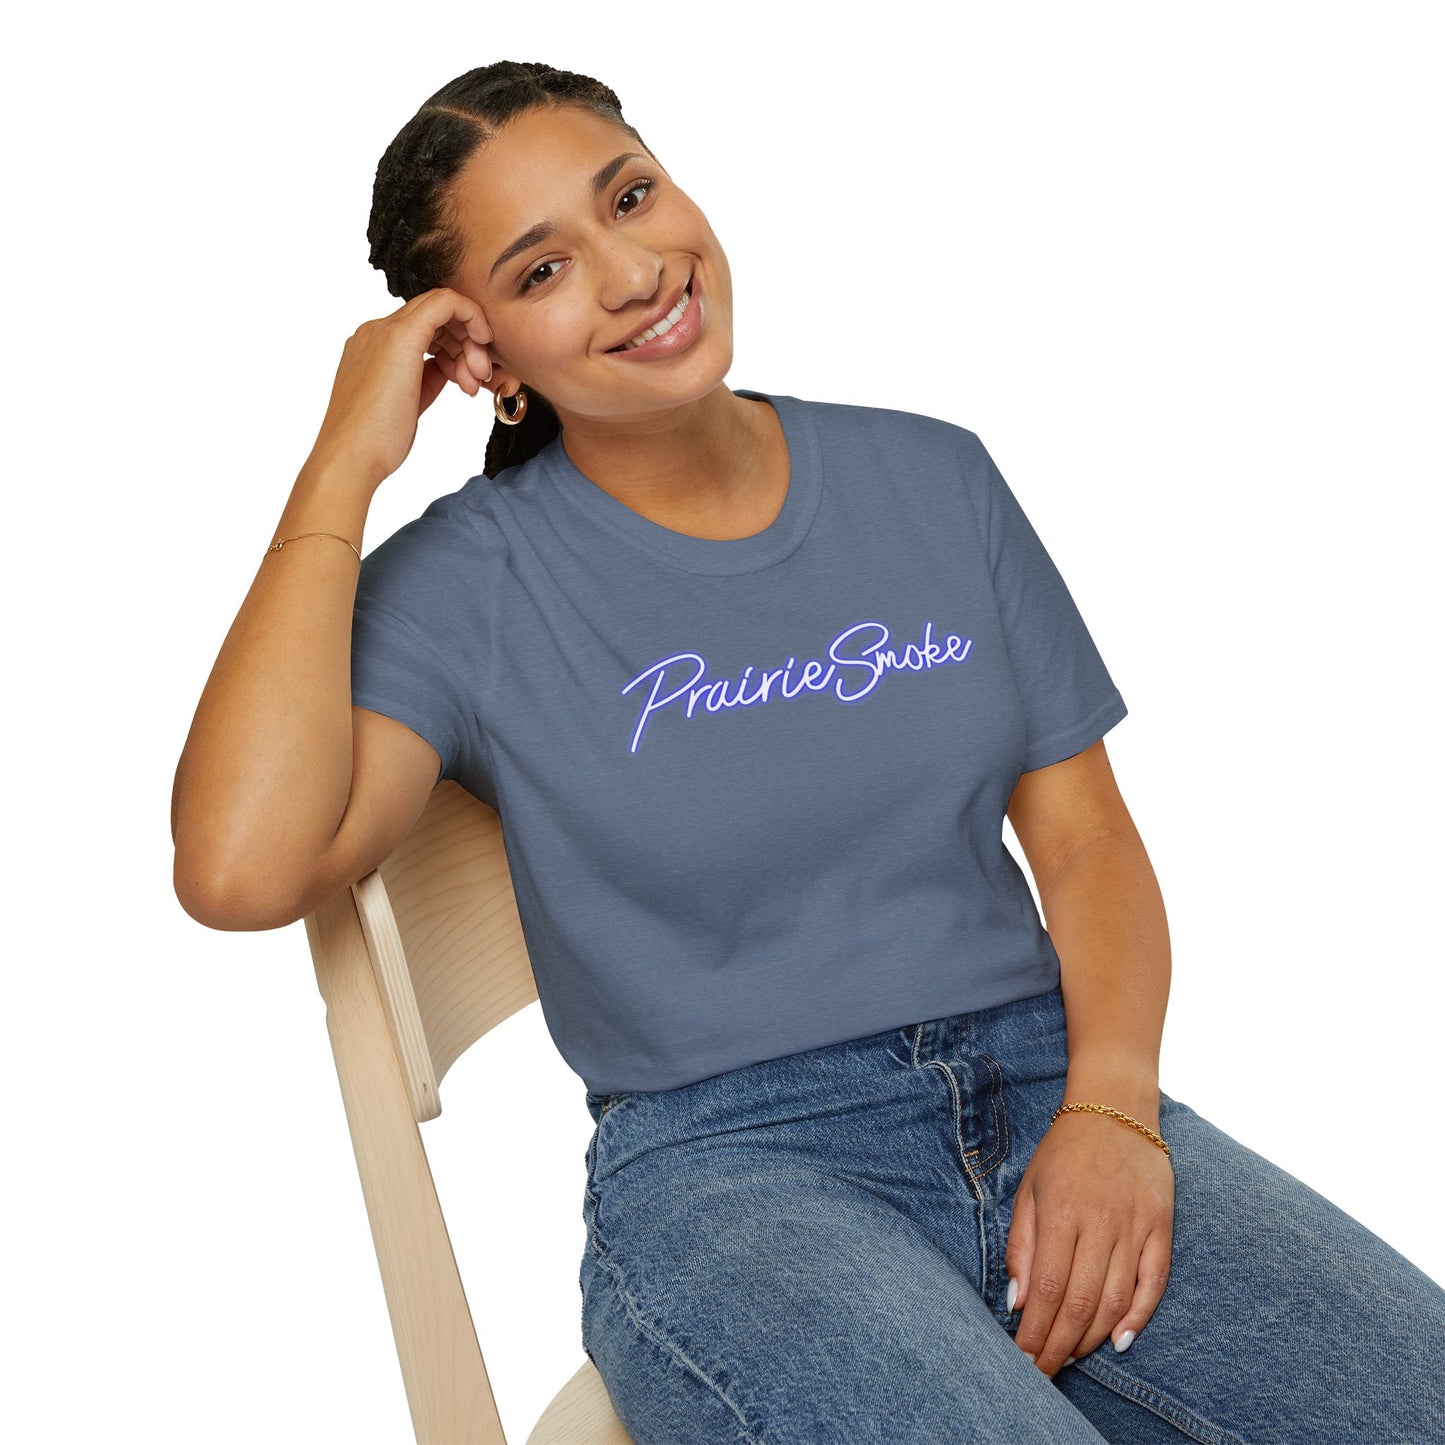 PrairieSmoke Classic Shirt